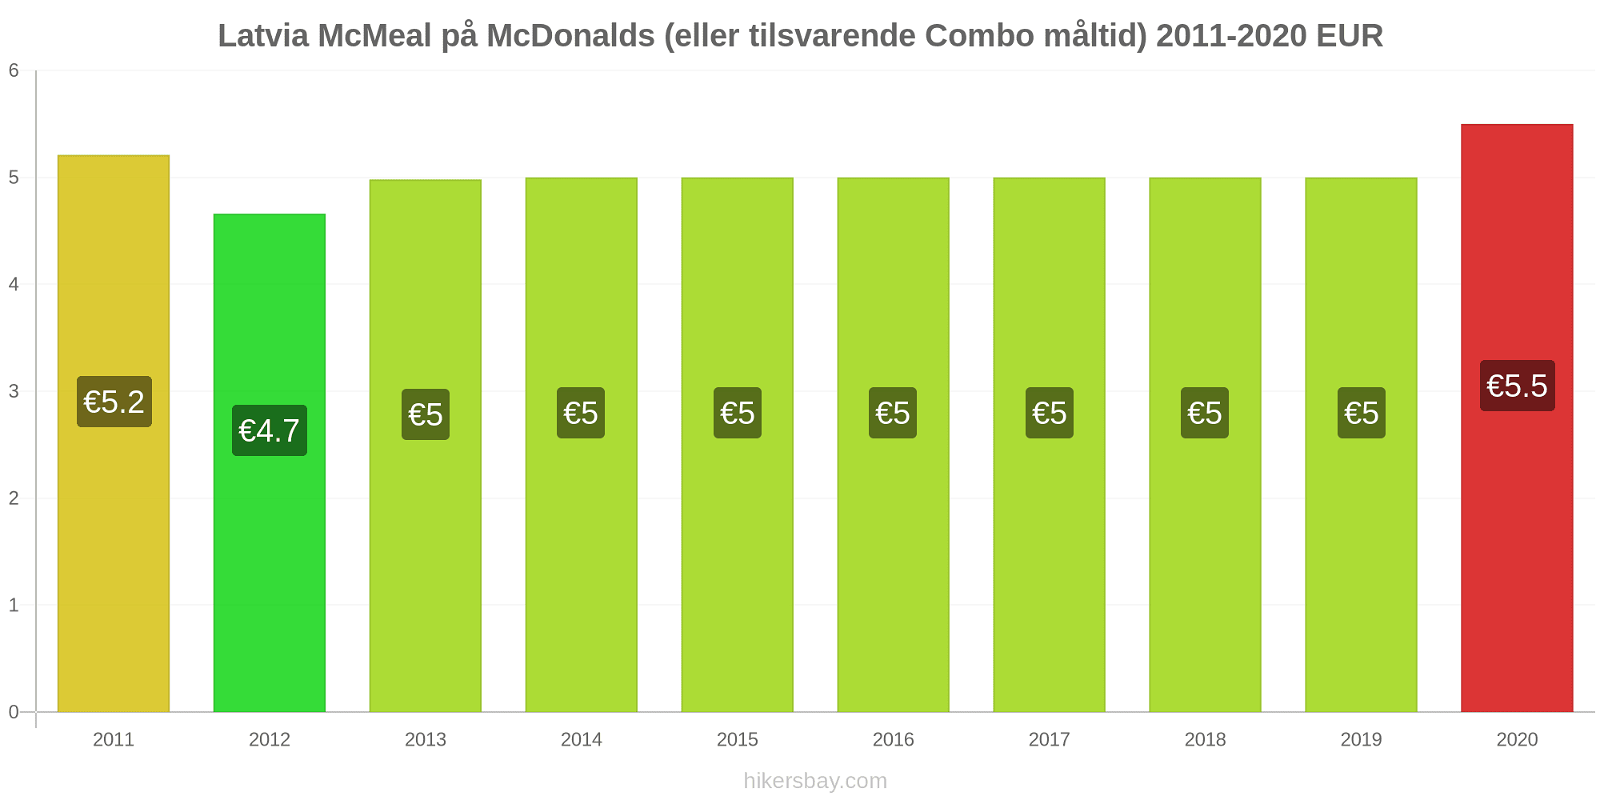 Latvia prisendringer McMeal på McDonalds (eller tilsvarende Combo måltid) hikersbay.com